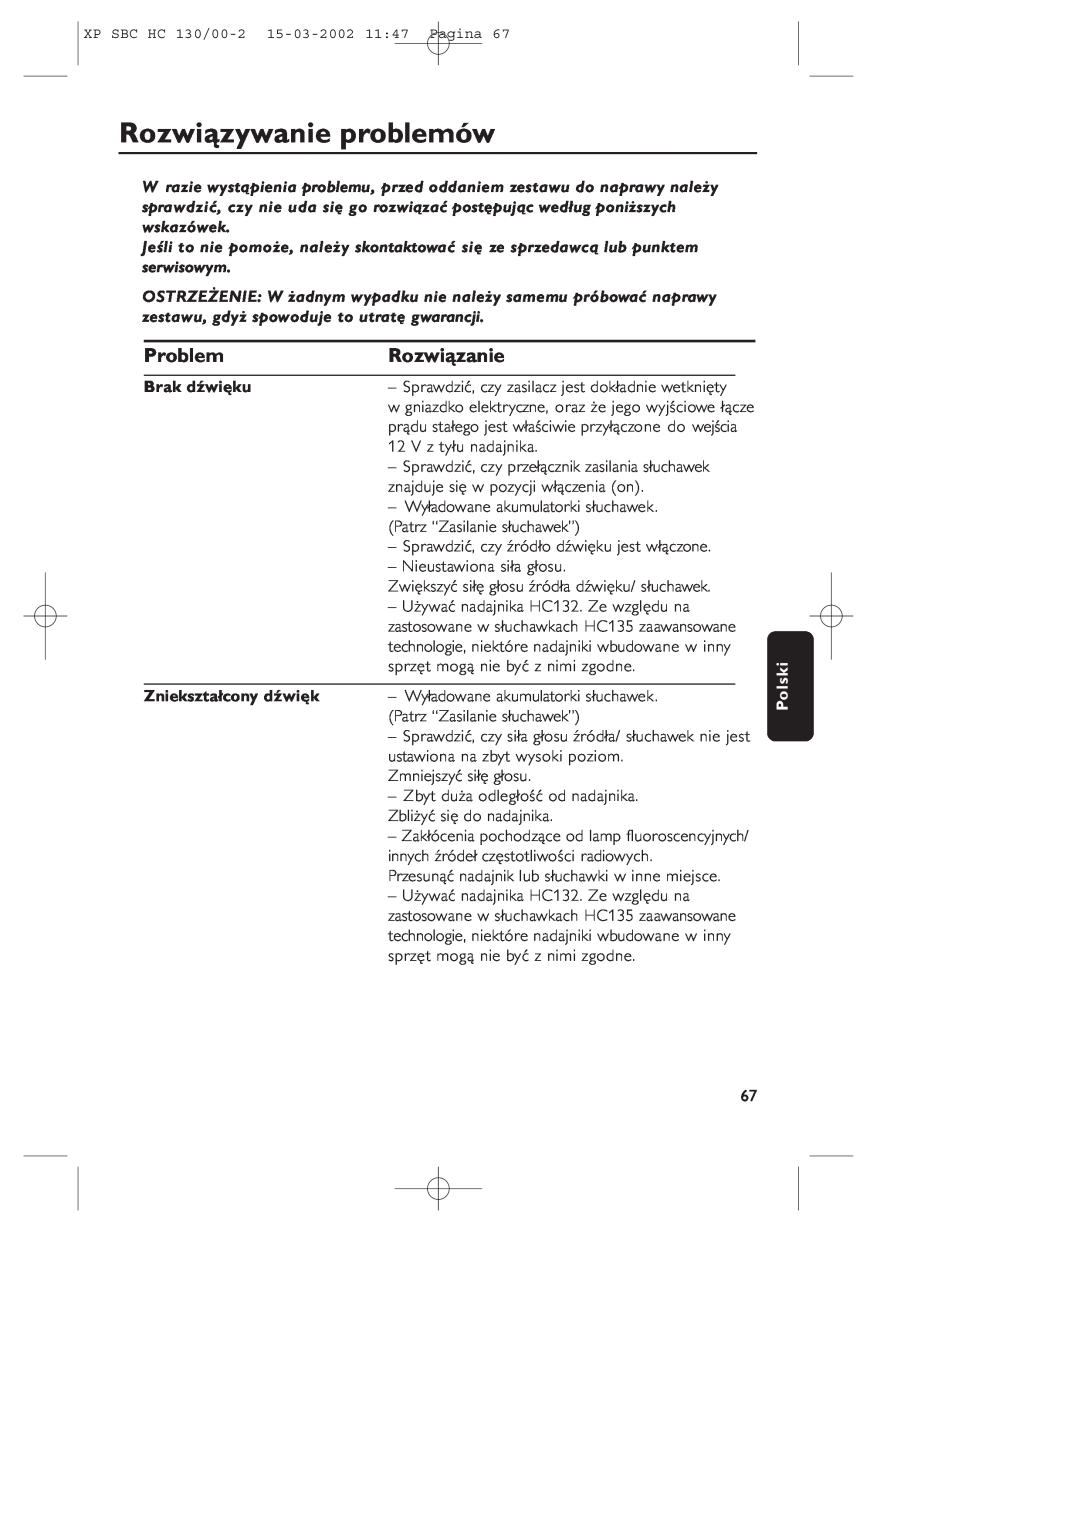 Philips SBC HC130 manual Rozwiązywanie problemów, Problem, Rozwiązanie, Brak dźwięku, Zniekształcony dźwięk, Polski 